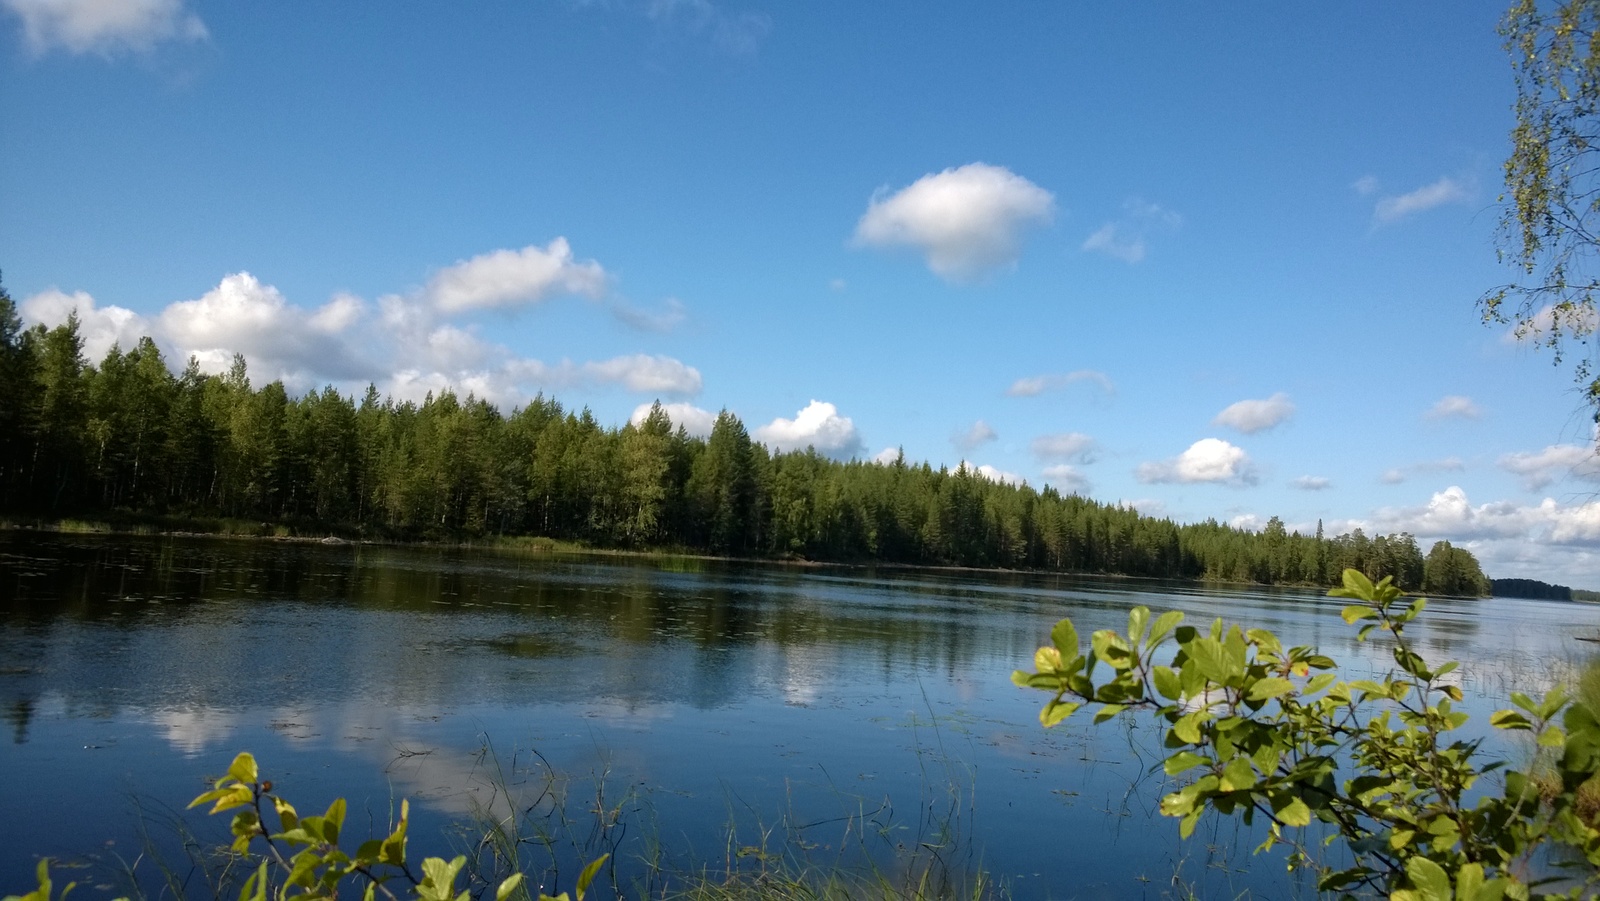 Kesäisessä järvimaisemassa vastarannan metsä ja puolipilvinen taivas heijastuvat veteen.